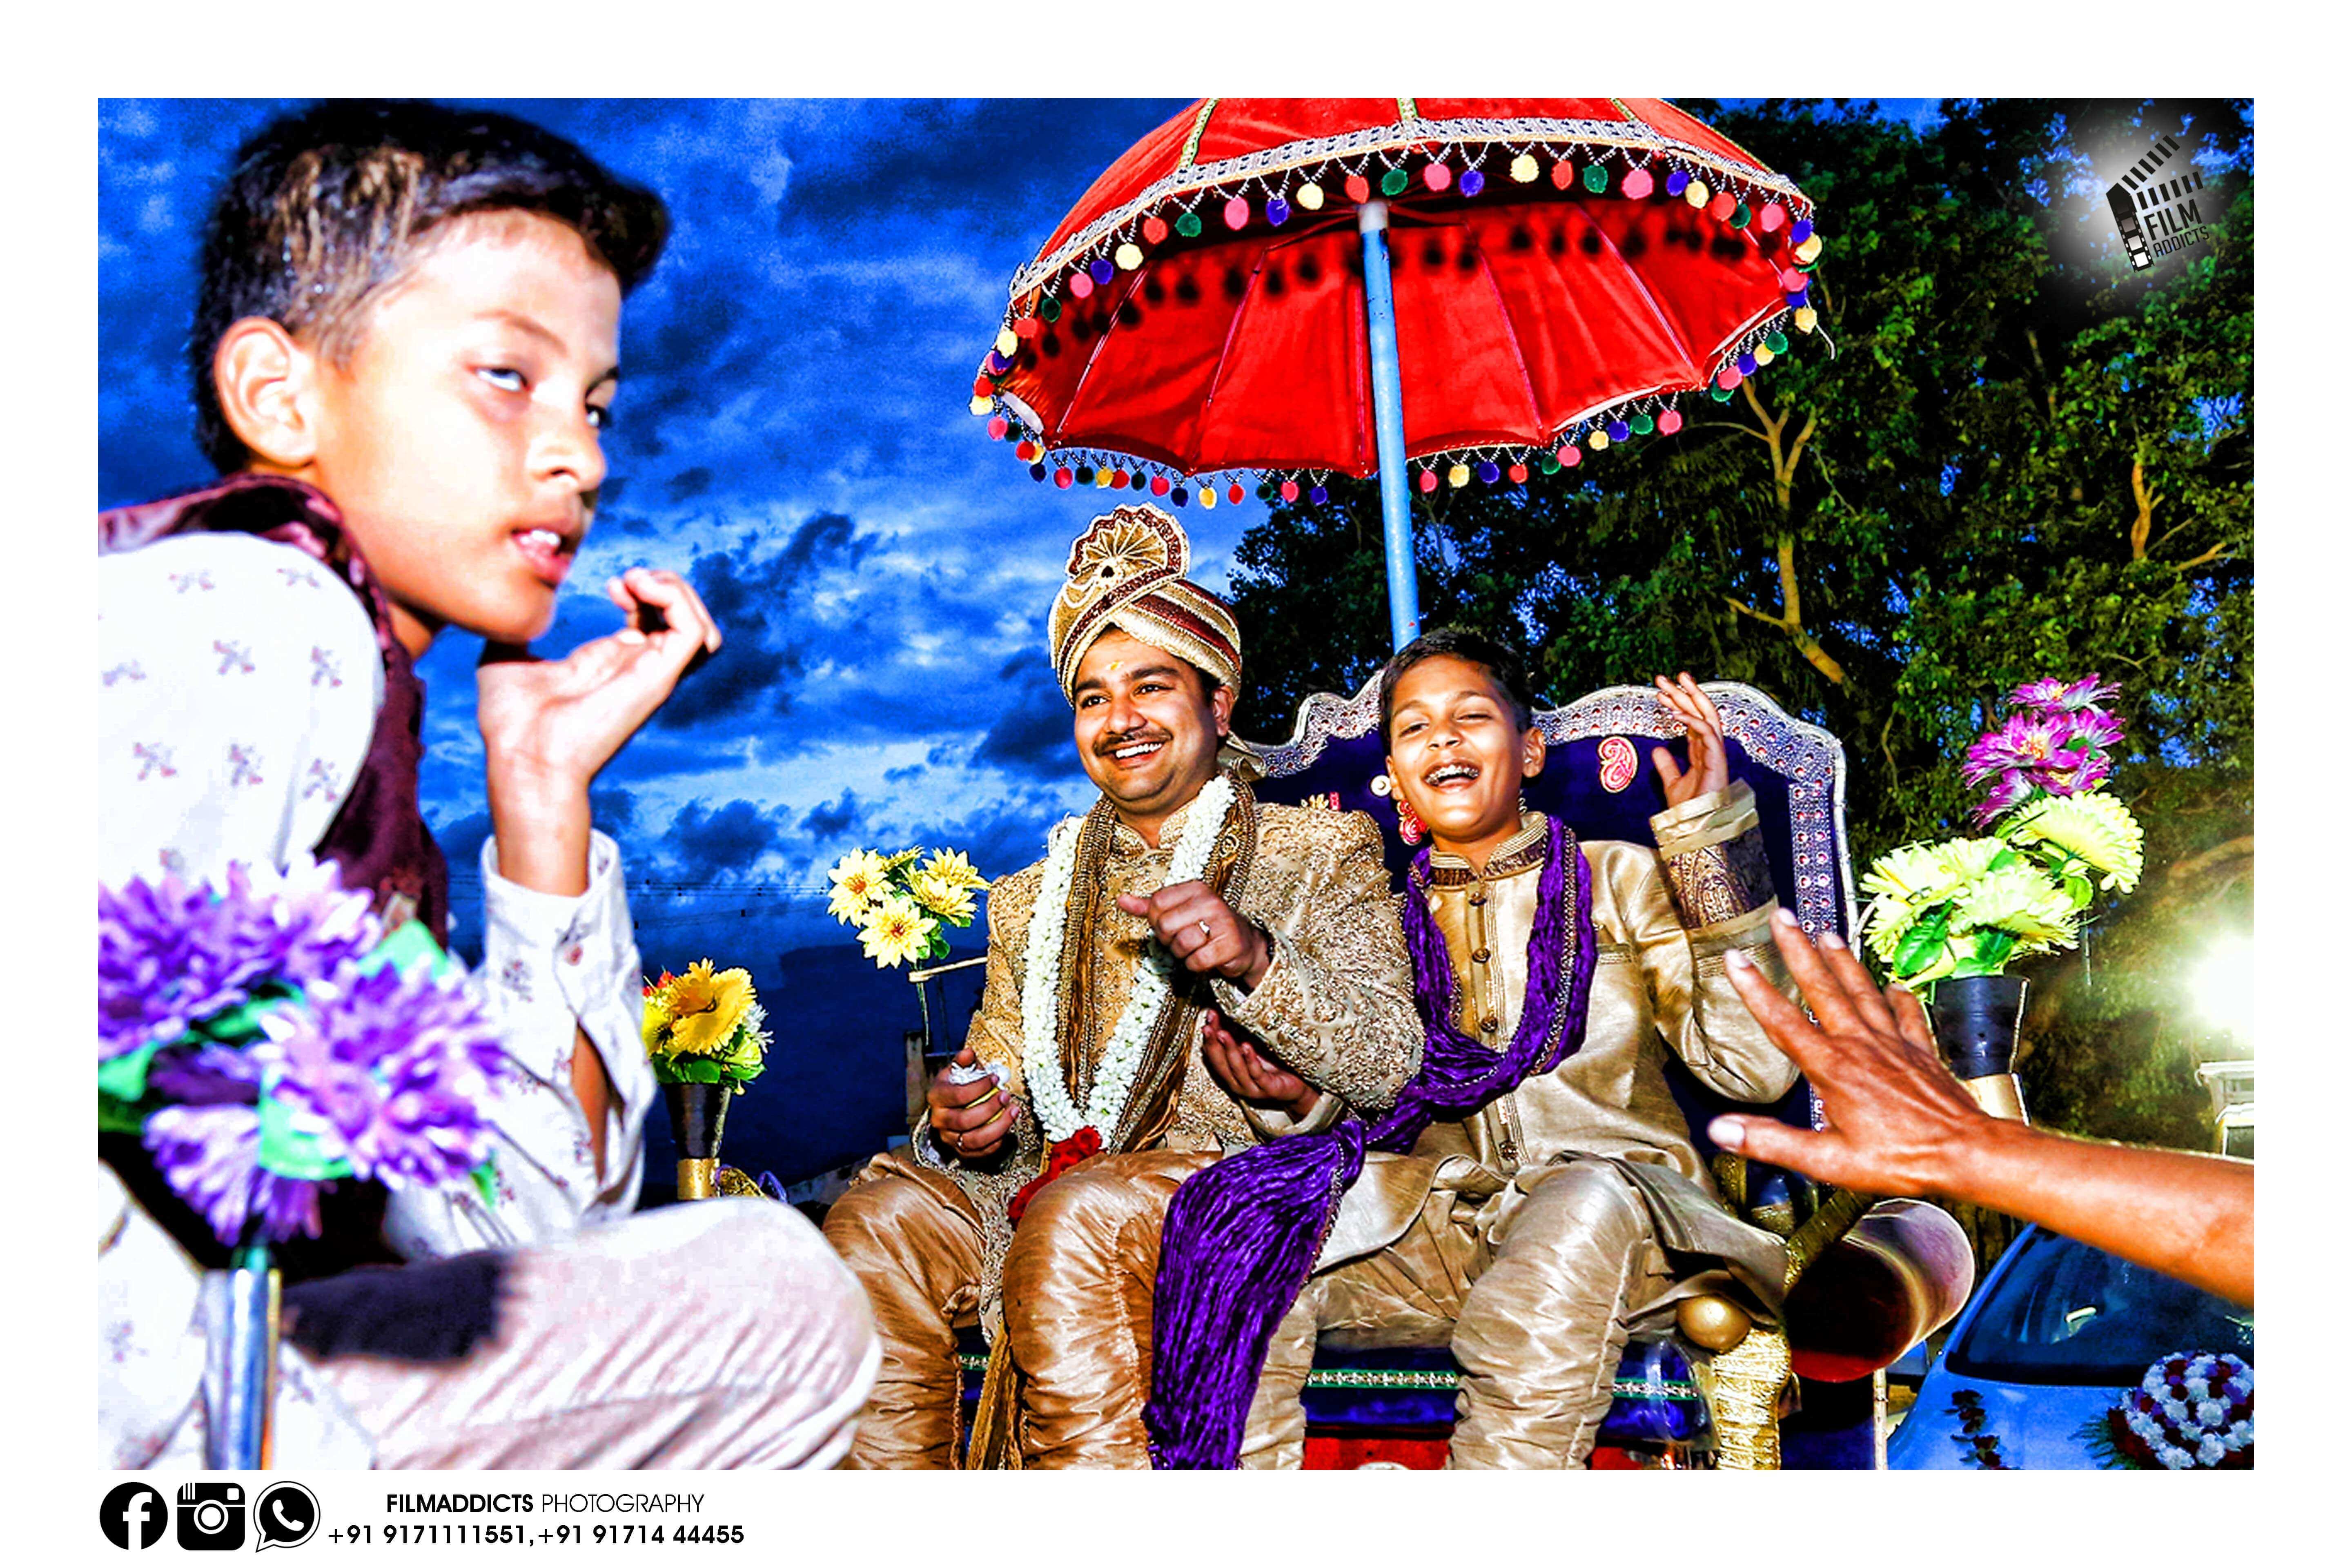 Best-wedding-cinimatography-in-madurai,Best-wedding-cinimatographer-in-madurai